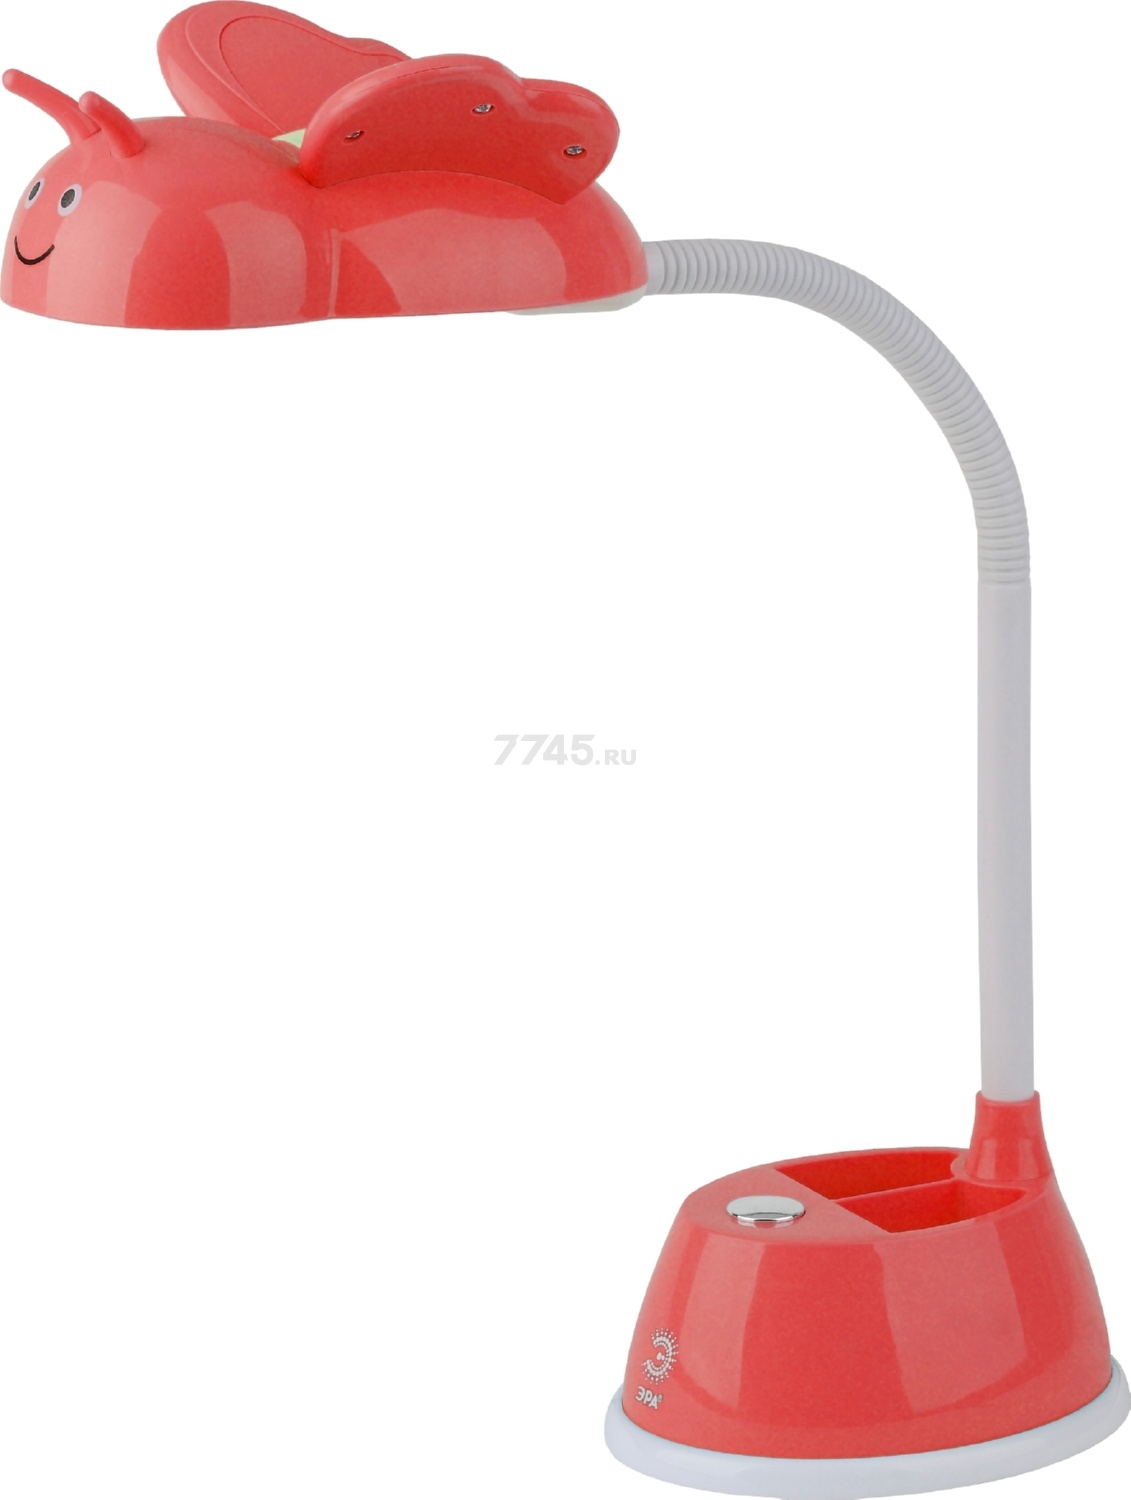 Лампа настольная светодиодная ЭРА NLED-434-6W-R красный